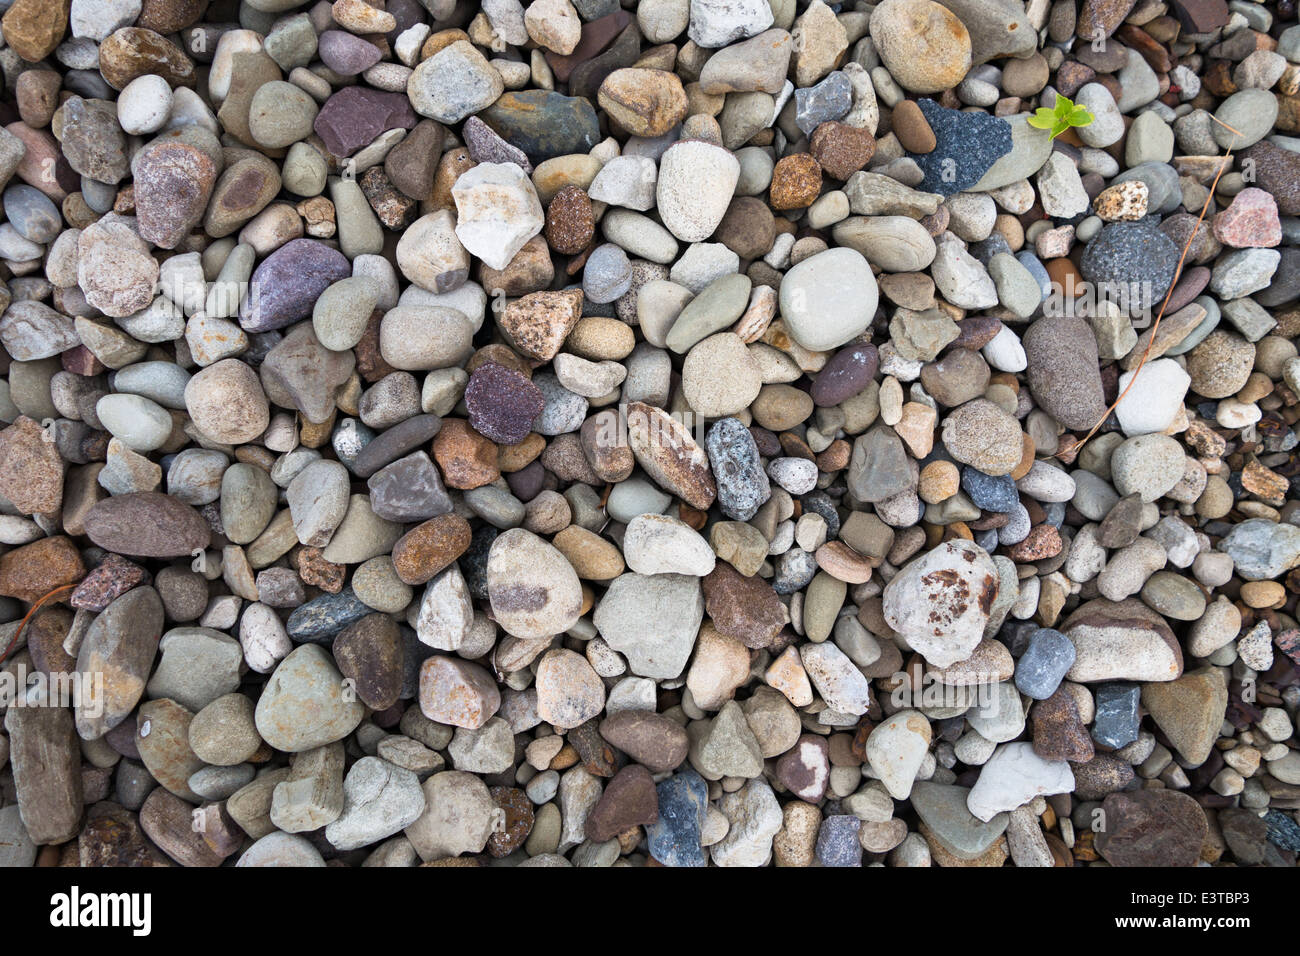 Viele glatten Steinen und Kieselsteinen in verschiedenen Farben, Formen und Größen Stockfoto